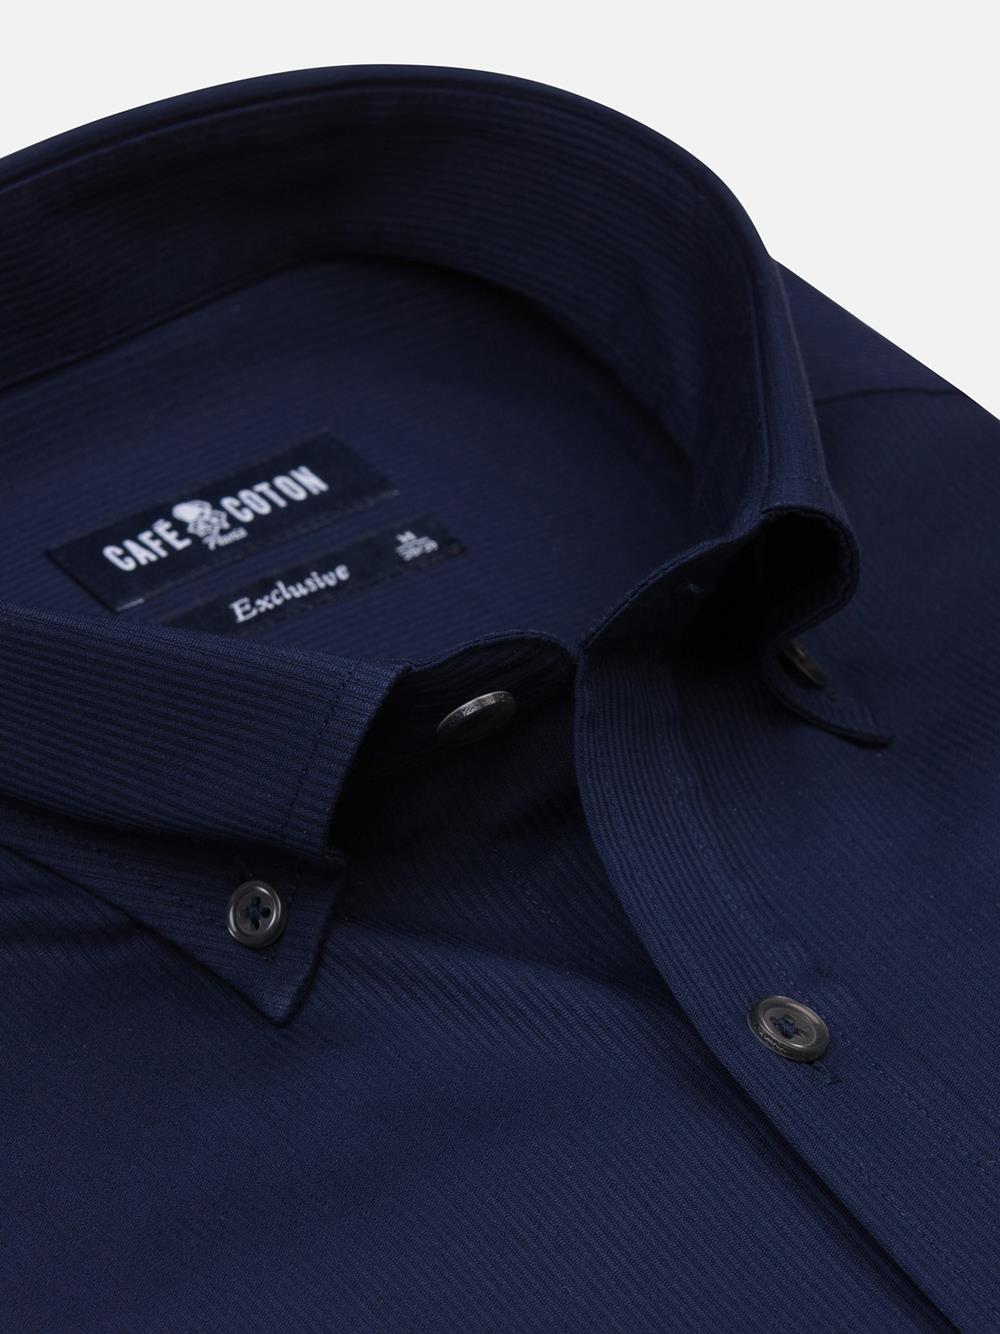 Vincennes marine getailleerd overhemd - Button-down kraag